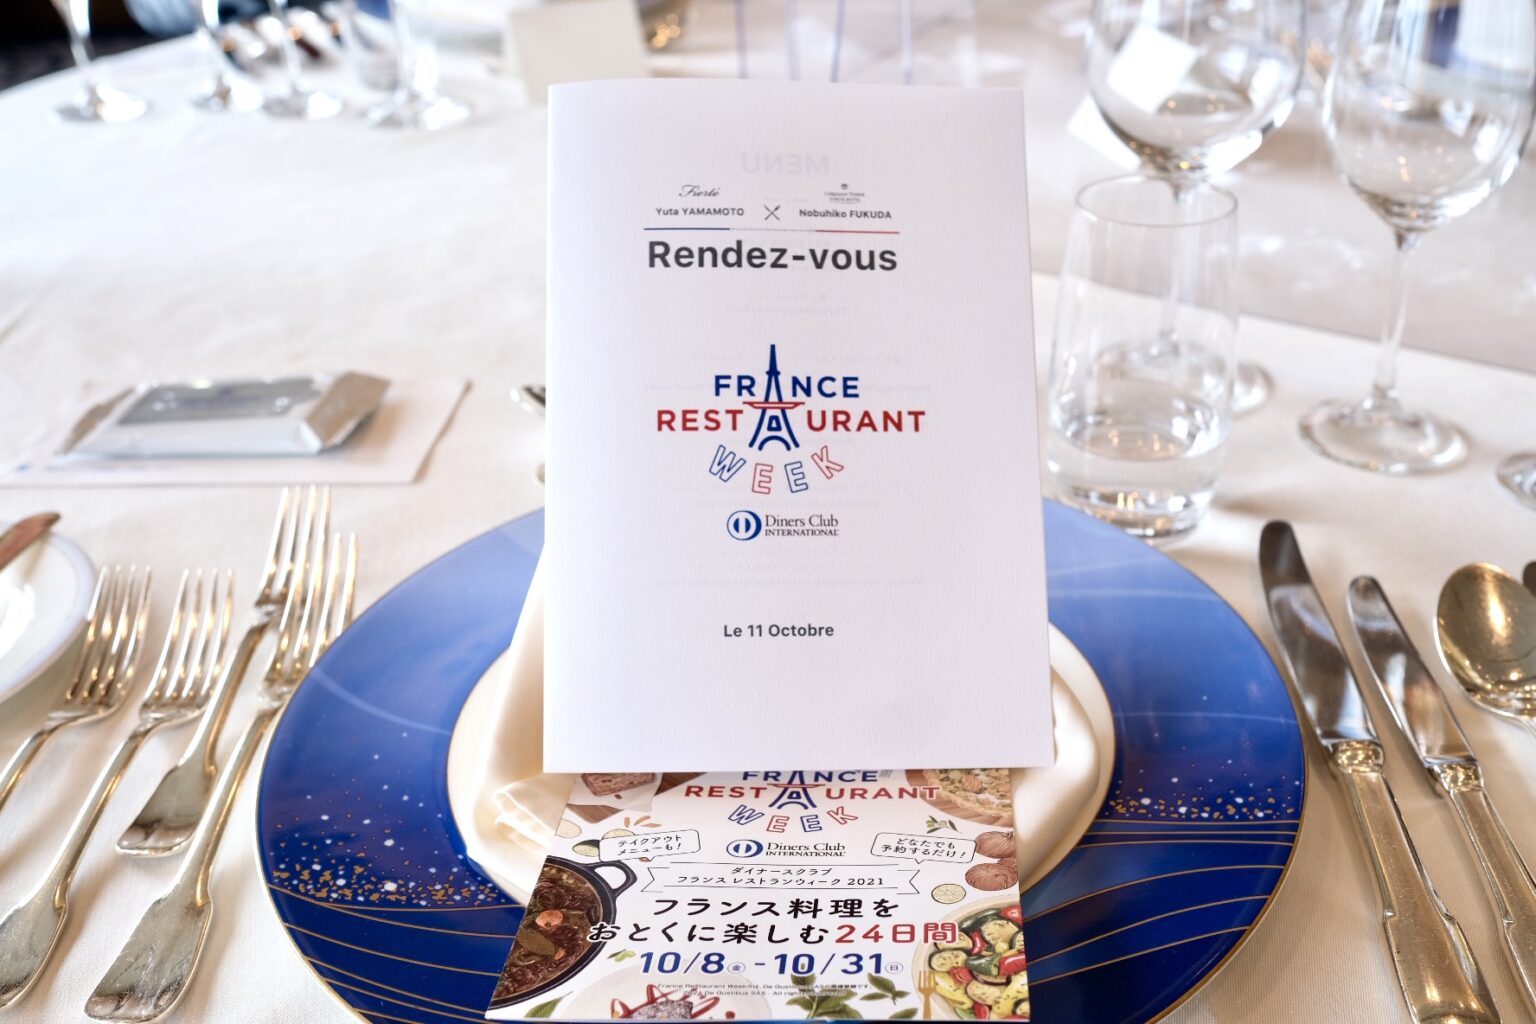 『ダイナースクラブ フランス レストランウィーク2021』のフォーカスシェフコラボレーションイベント『～Rendez-vous～』。